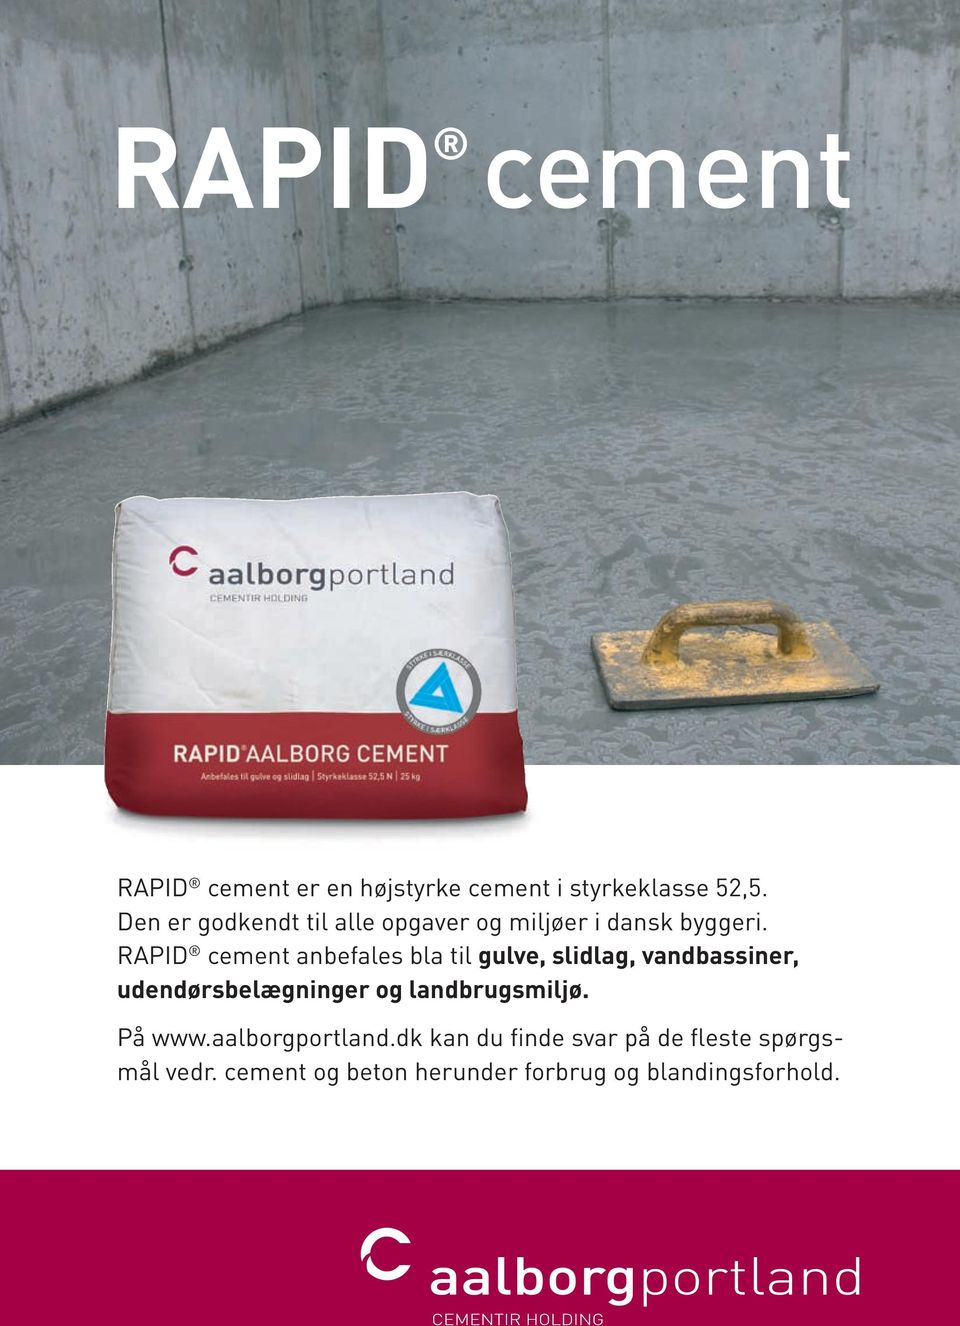 RAPID cement anbefales bla til gulve, slidlag, vandbassiner, udendørsbelægninger og